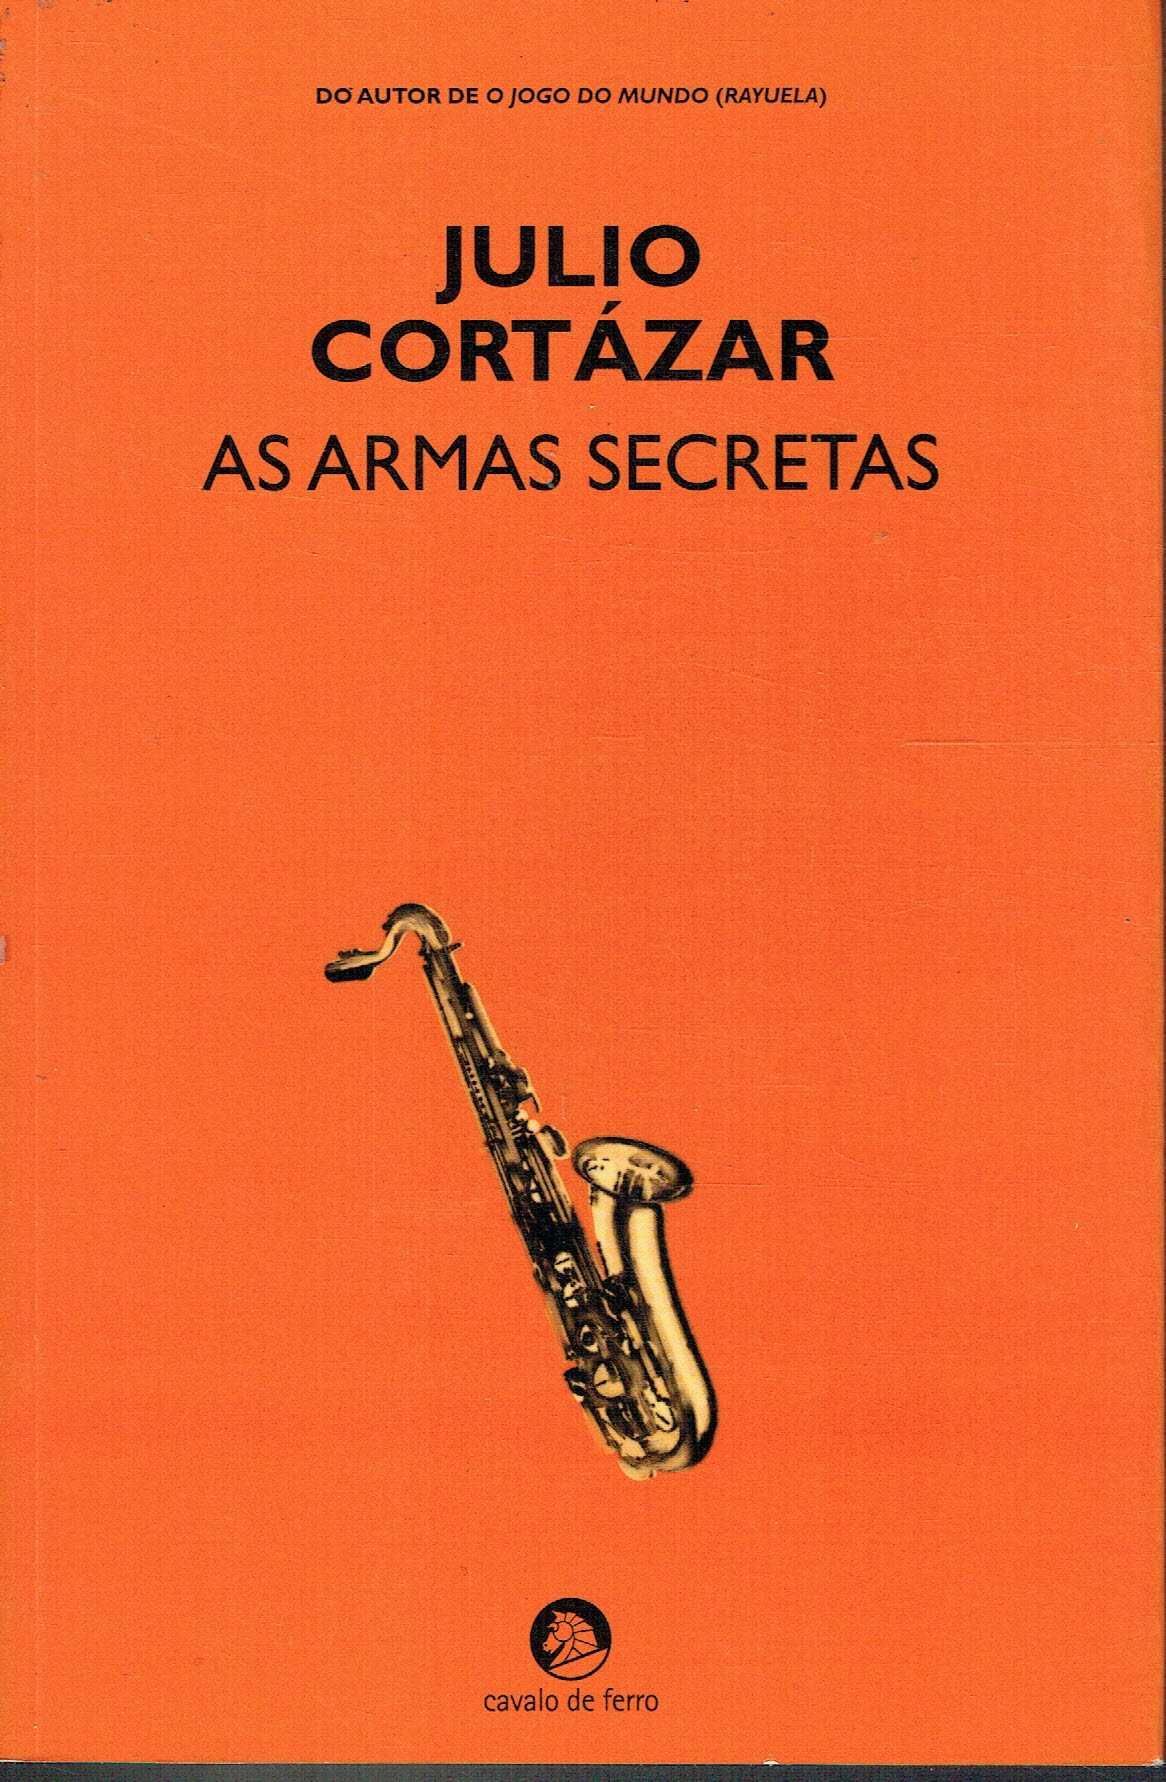 15461

As Armas Secretas
de Julio Cortázar